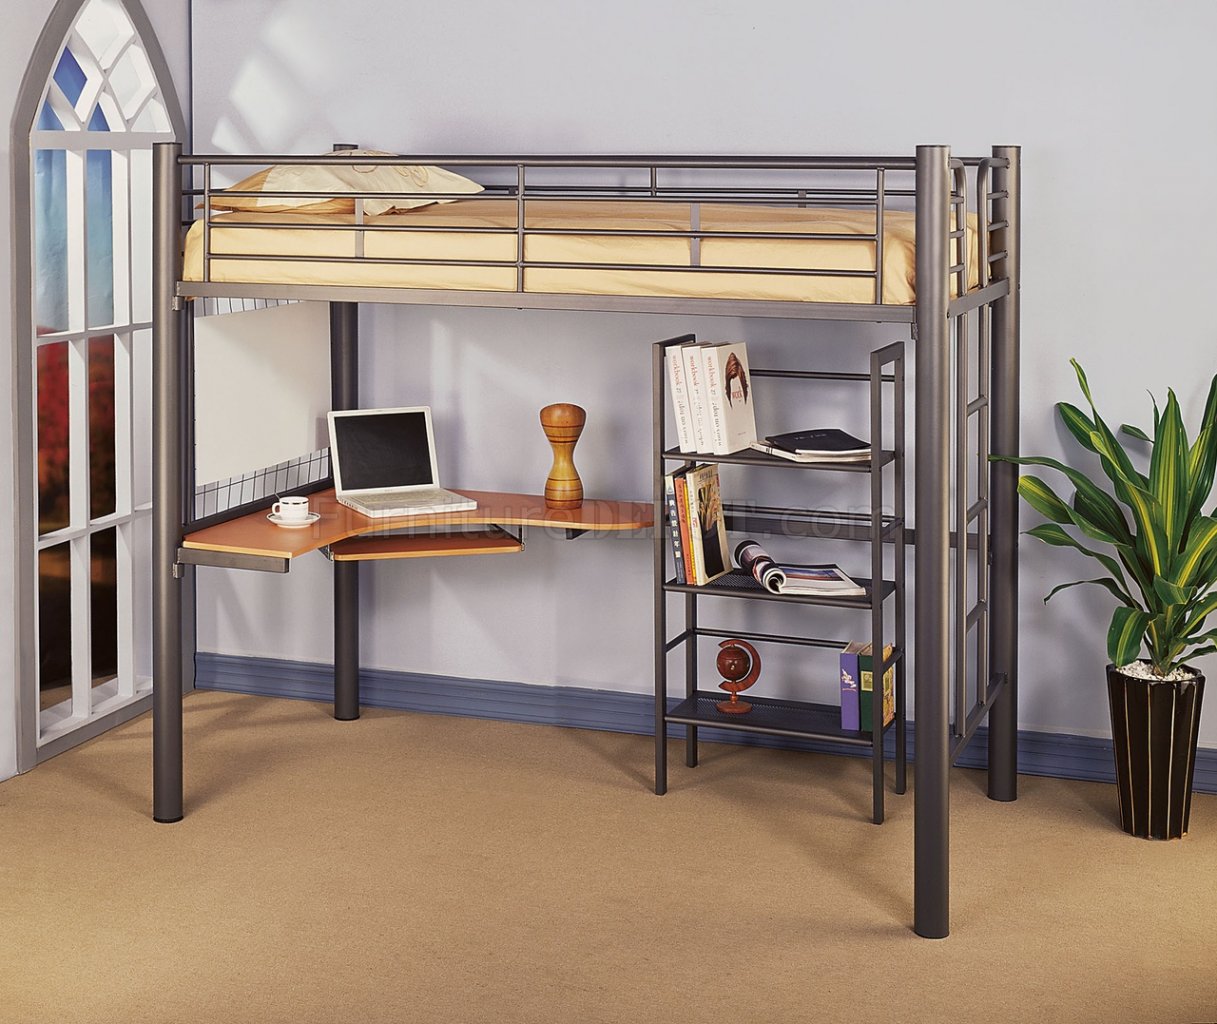 Siver Metal Contemporary Twin Loft Bed W Desk Bookcase